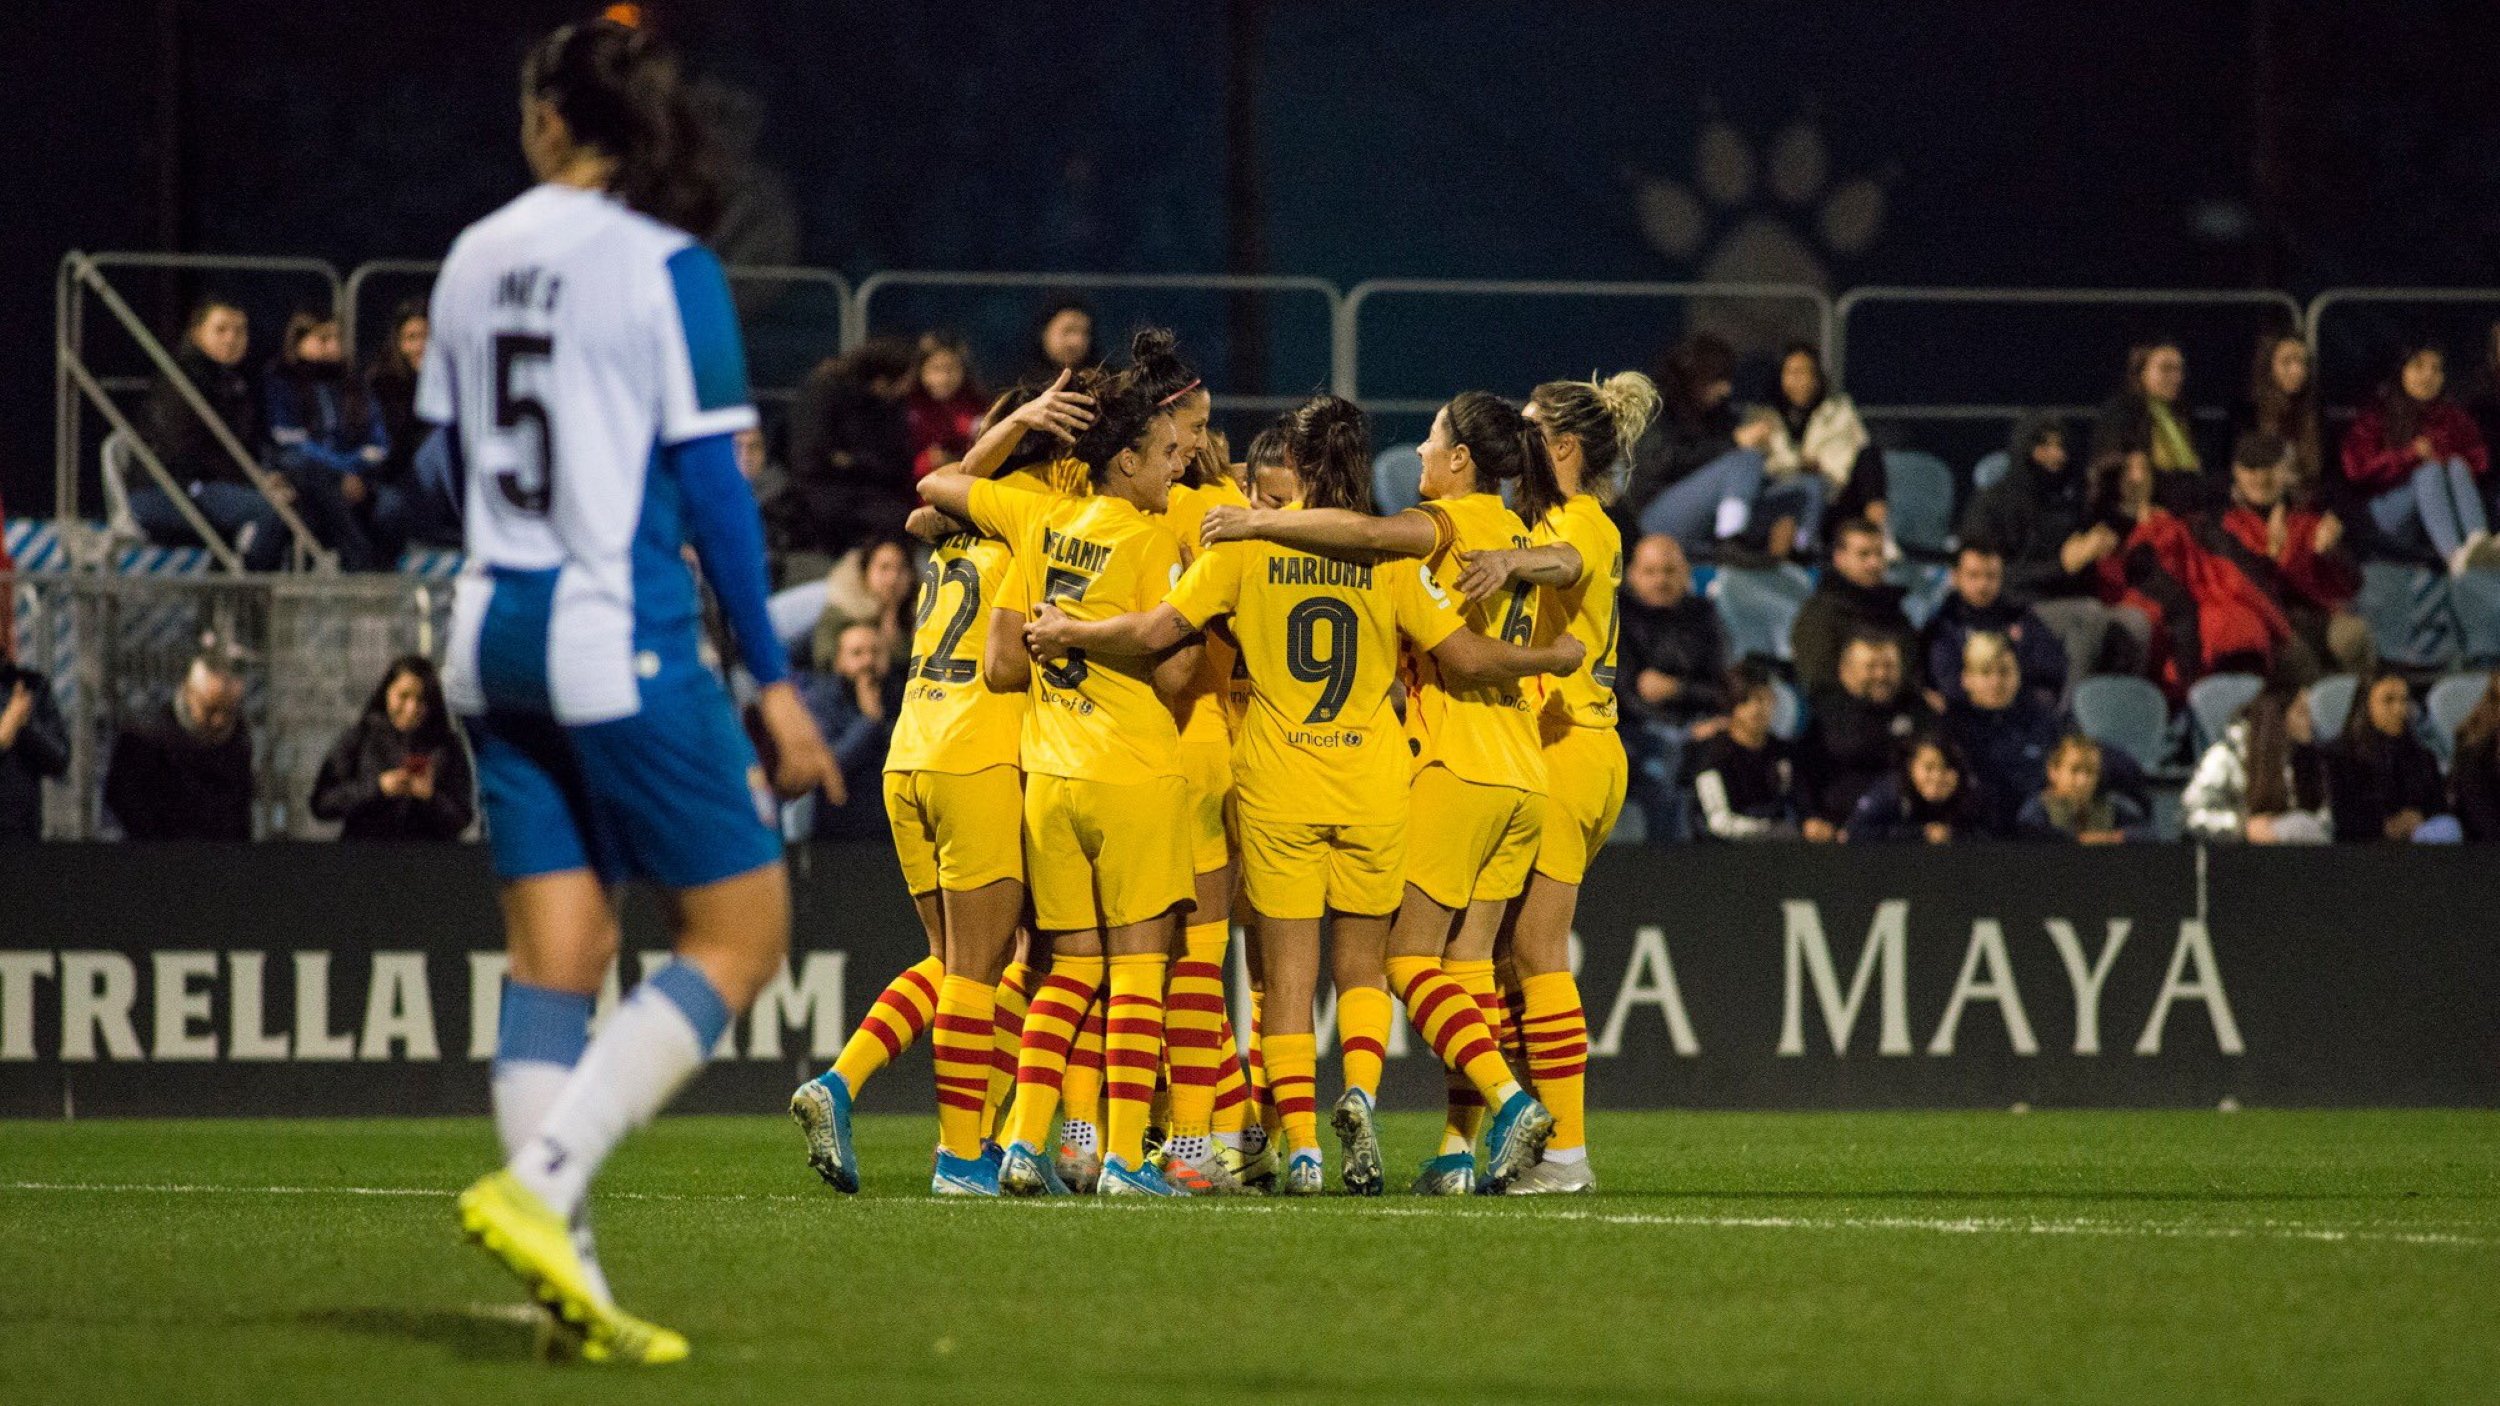 El Barça femení enfonsa l'Espanyol i és més líder (0-4)